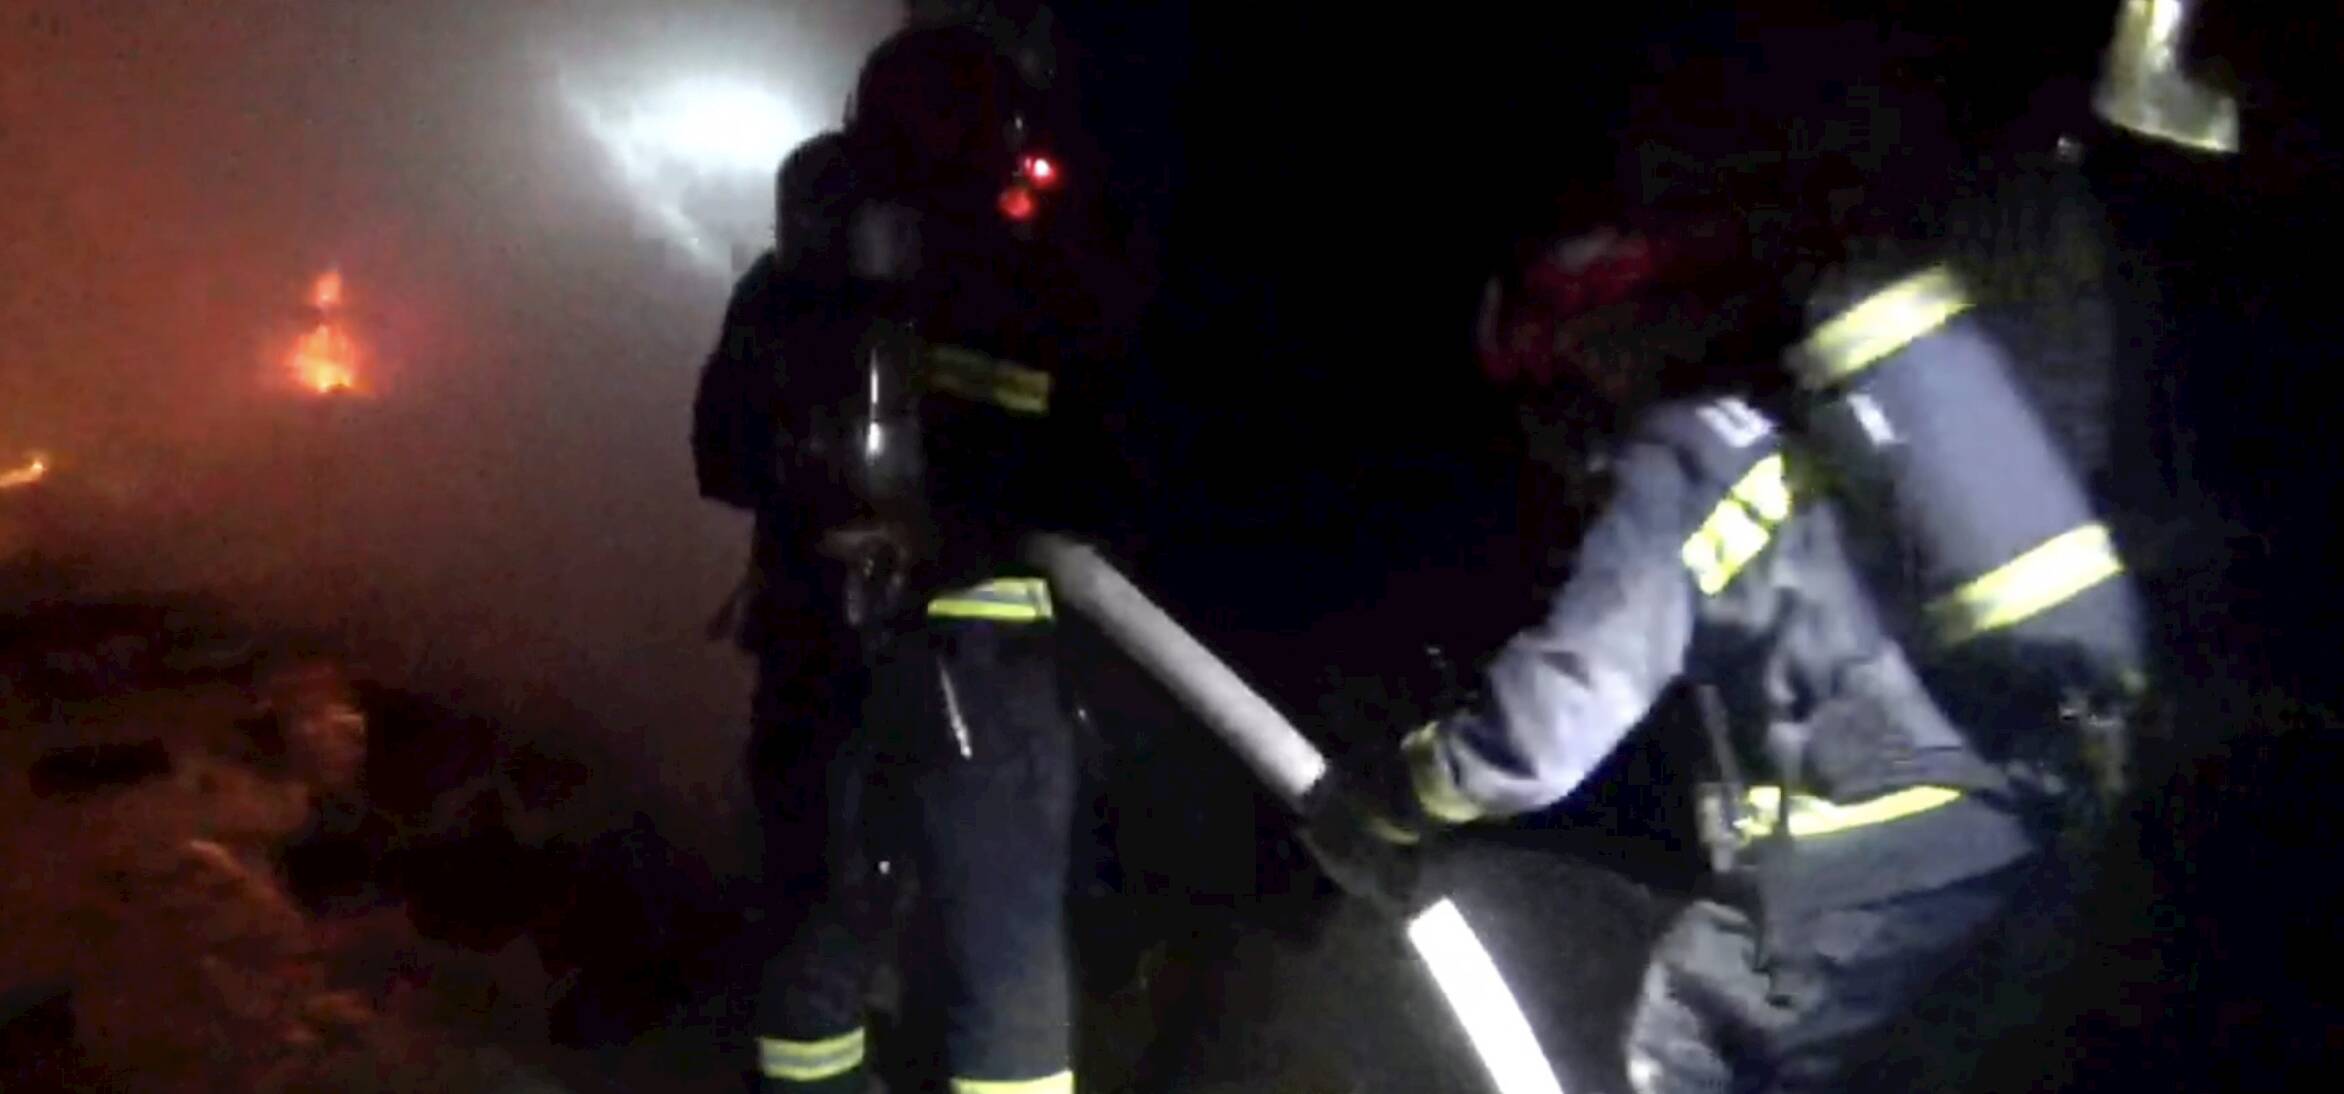 宁津一老人被困火场 消防员展开20分钟生死大营救